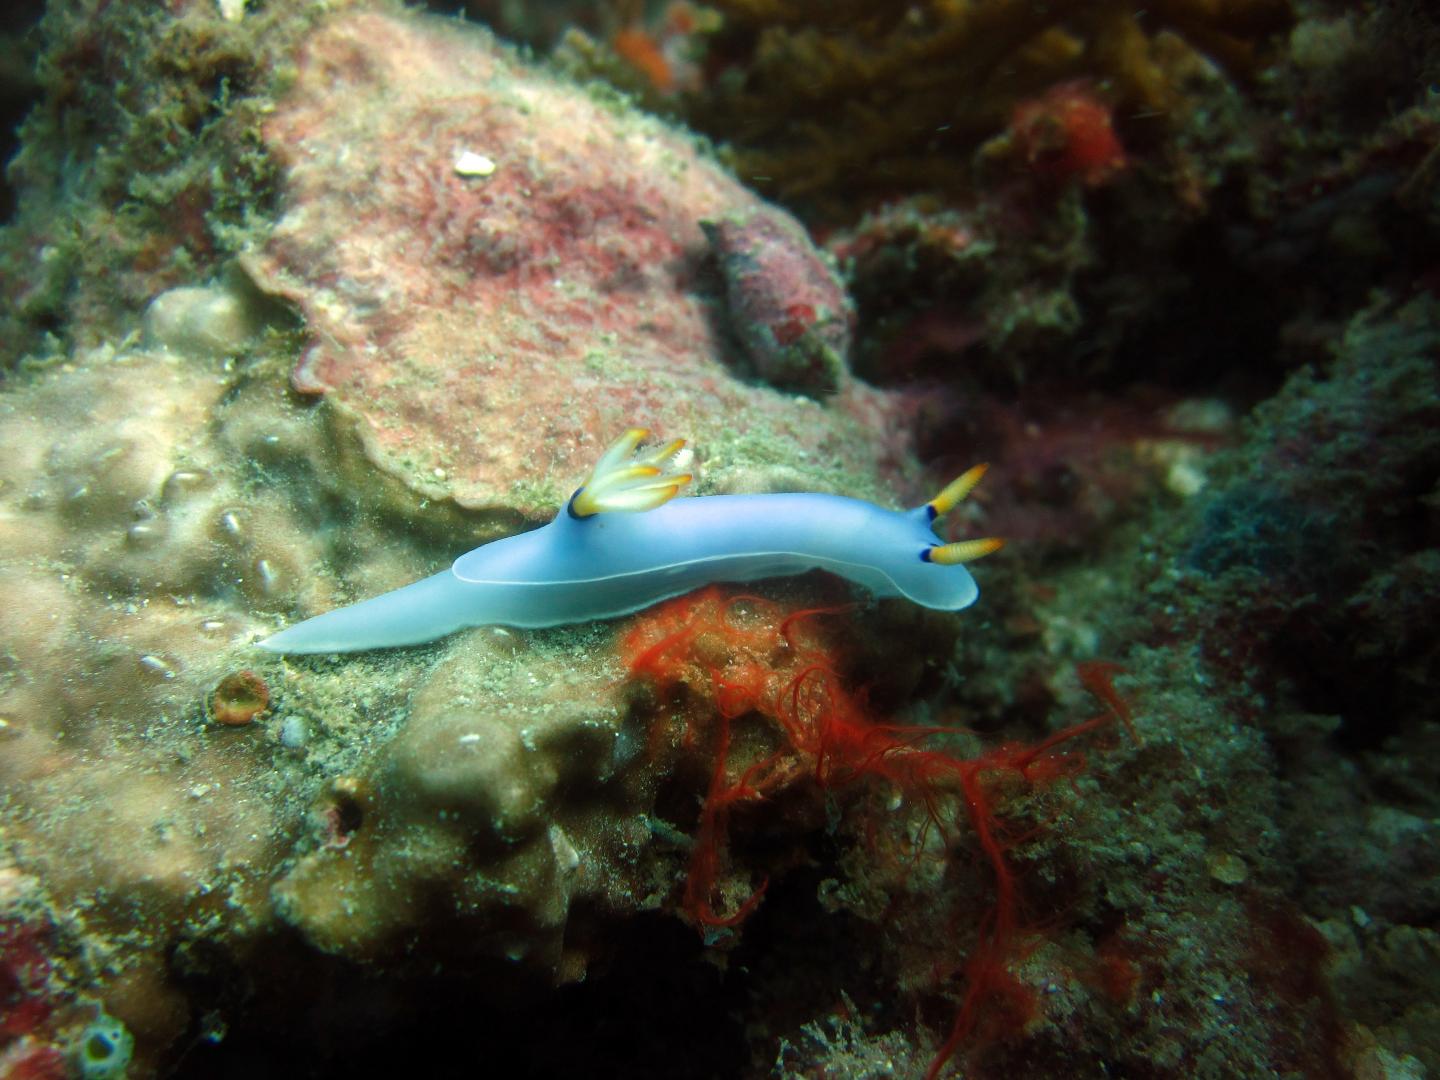 A New Species of Sea Slug